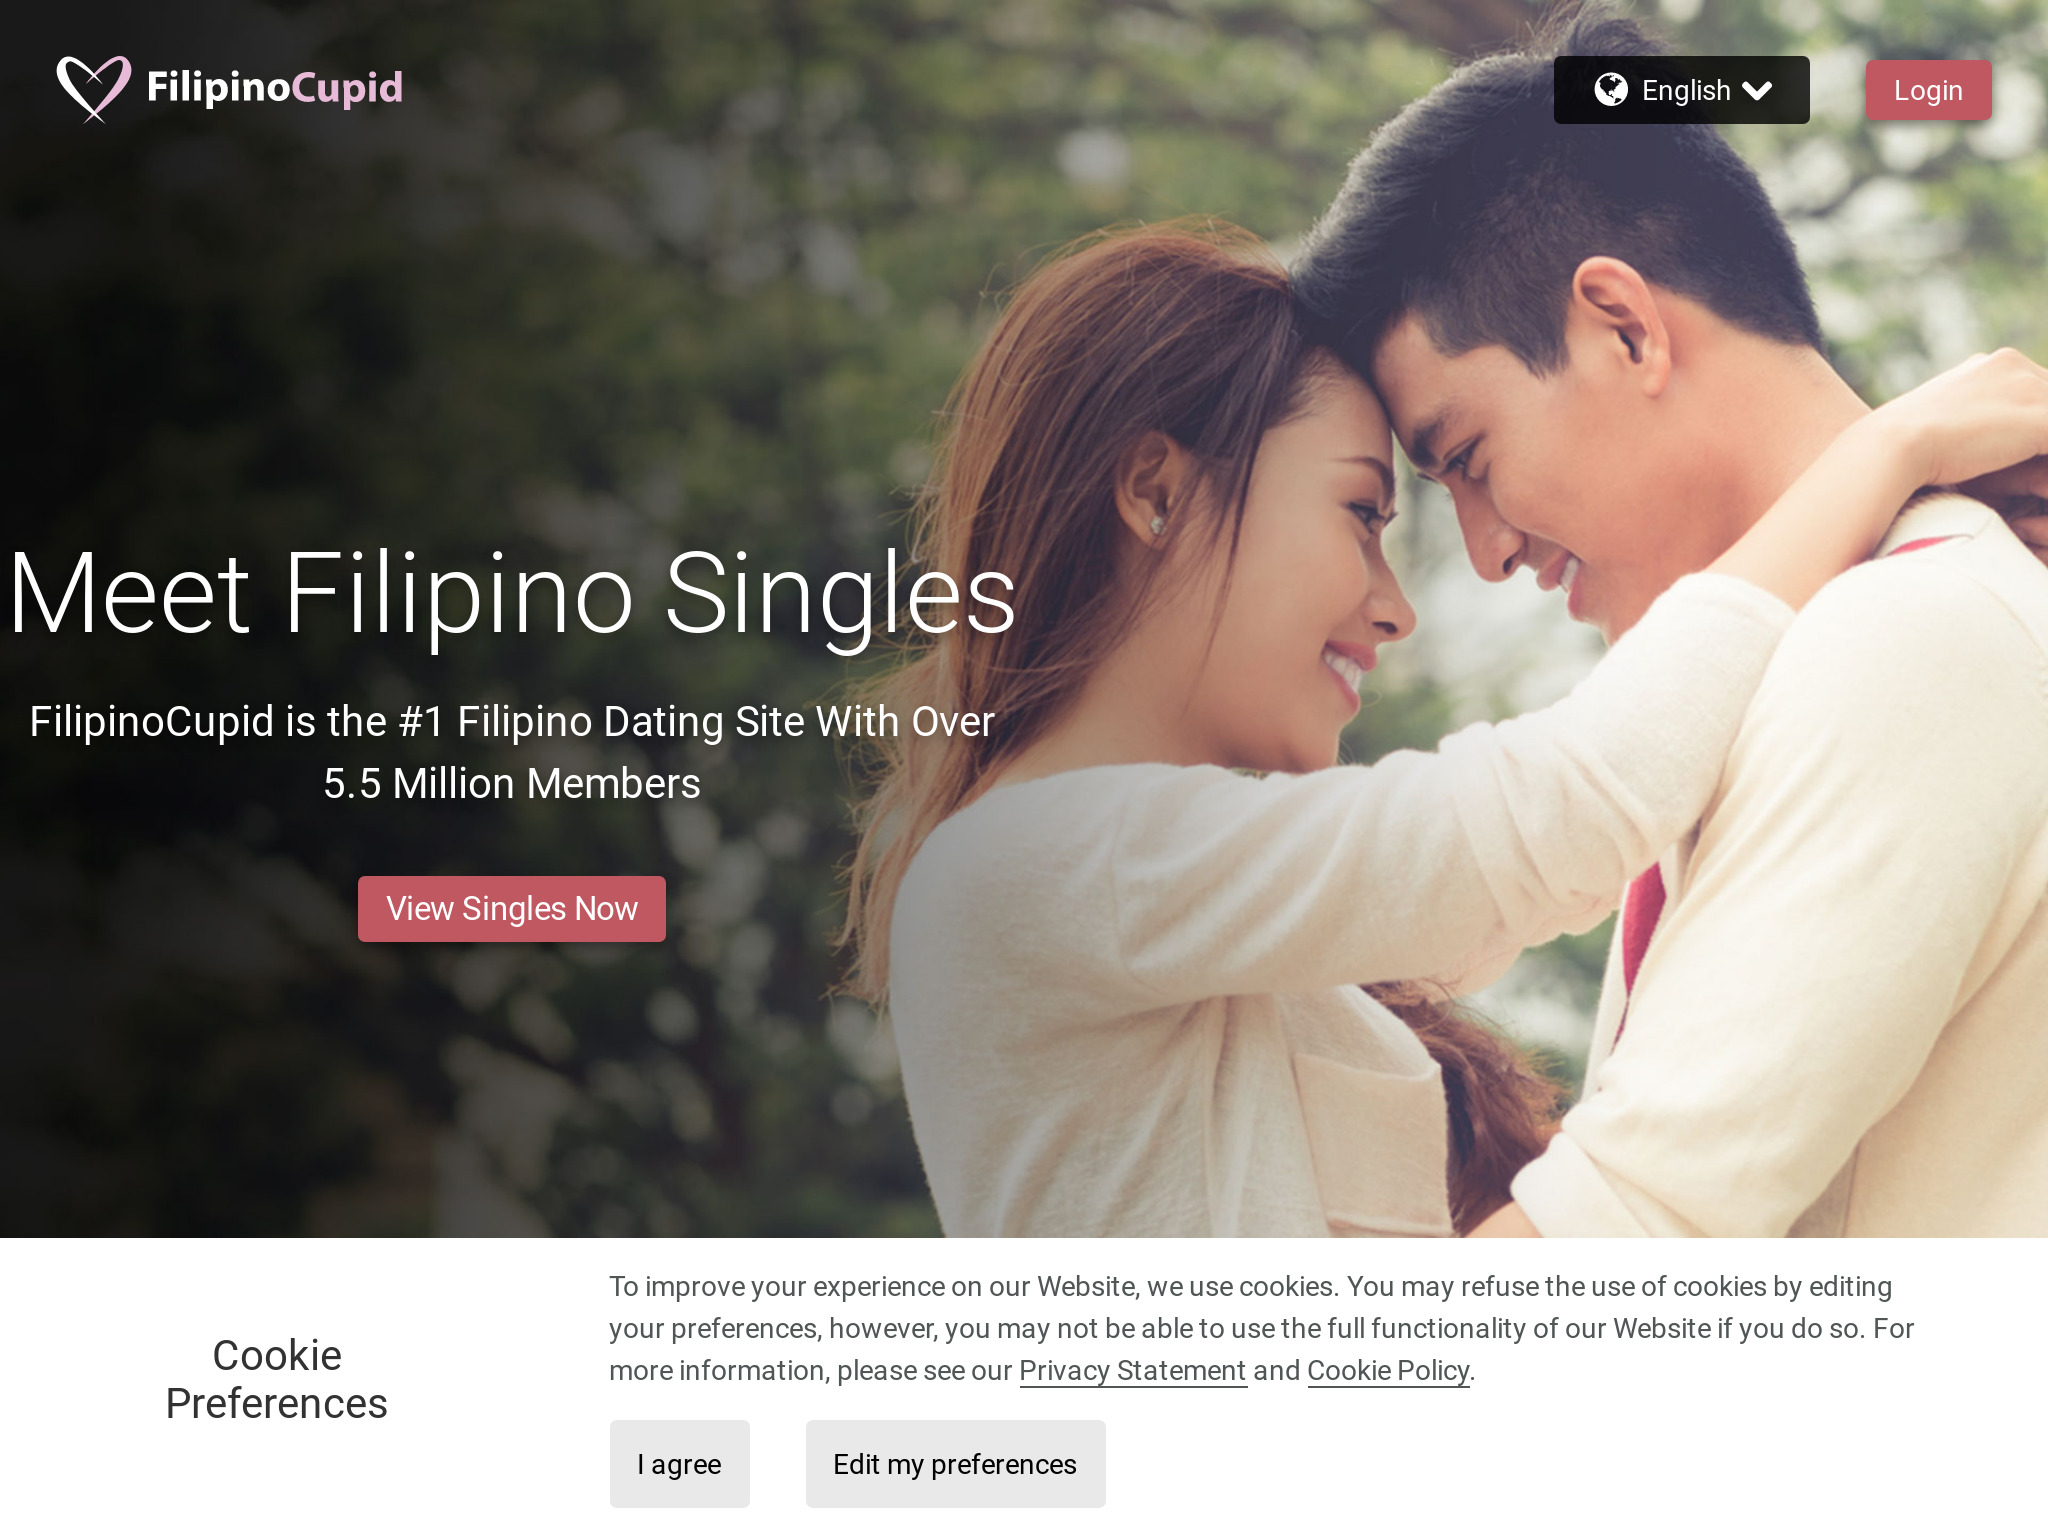 Revue de FilipinoCupid : Ce que vous devez savoir avant de vous inscrire